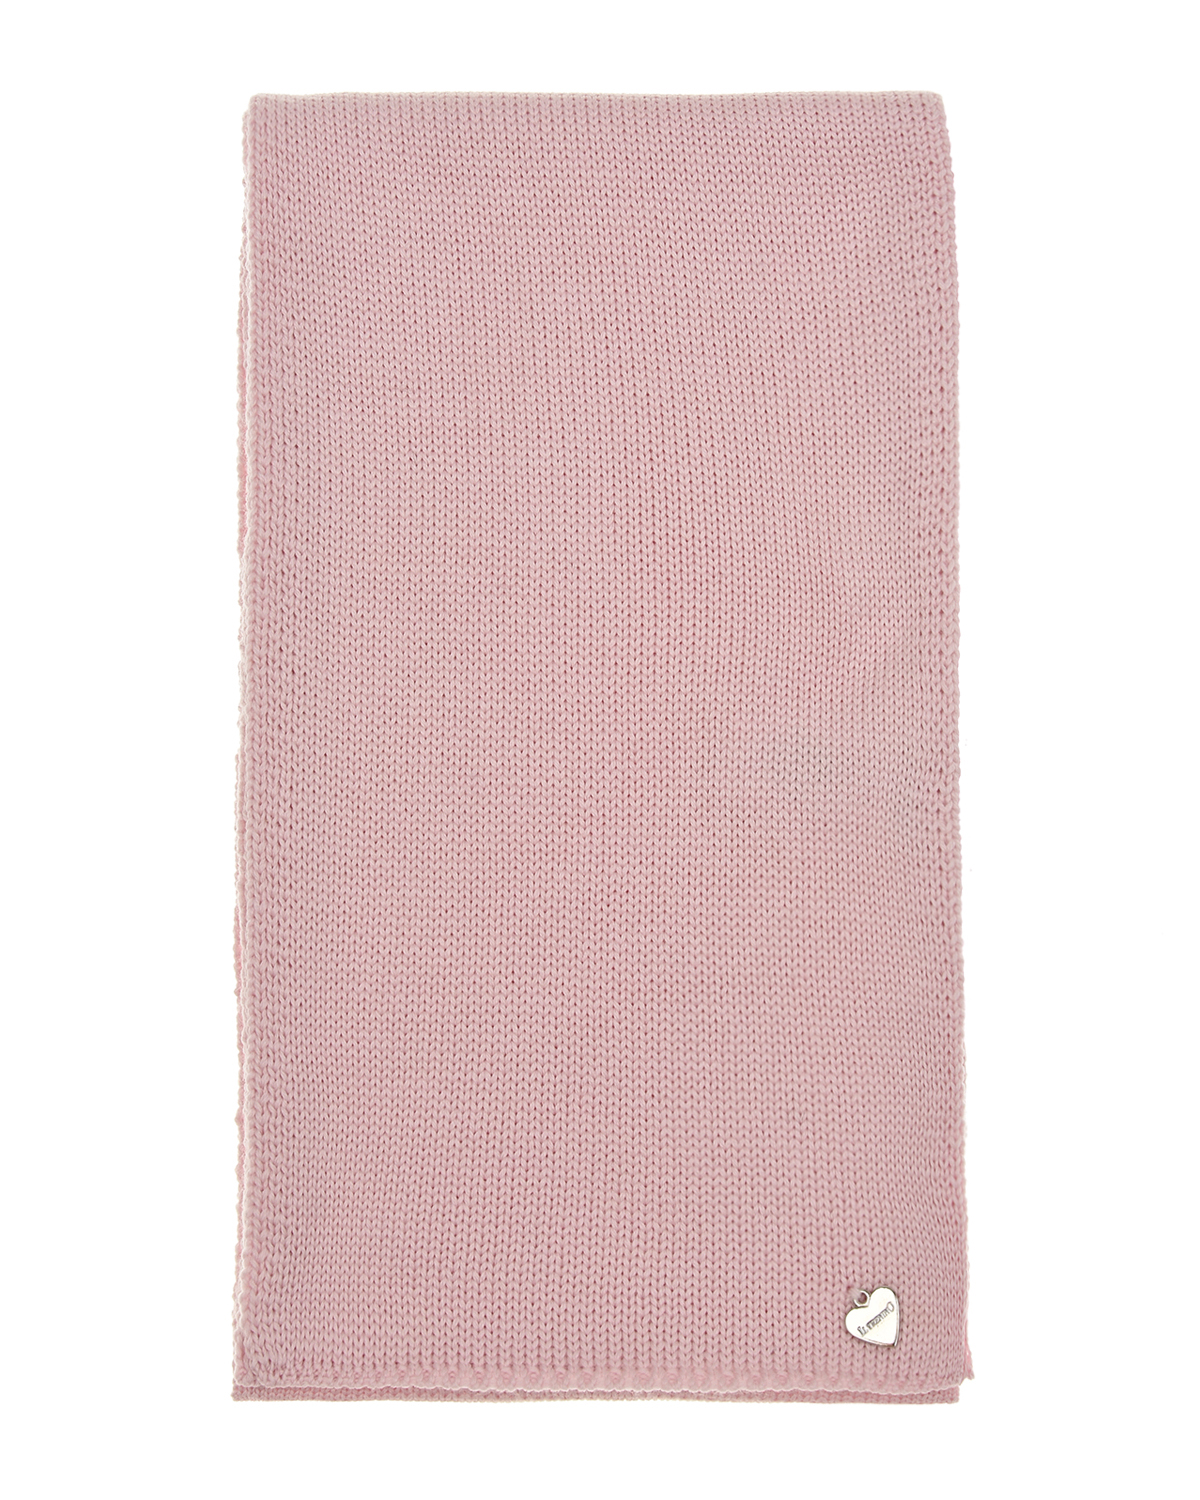 Розовый шарф 140х19 см Il Trenino детский, размер unica - фото 2